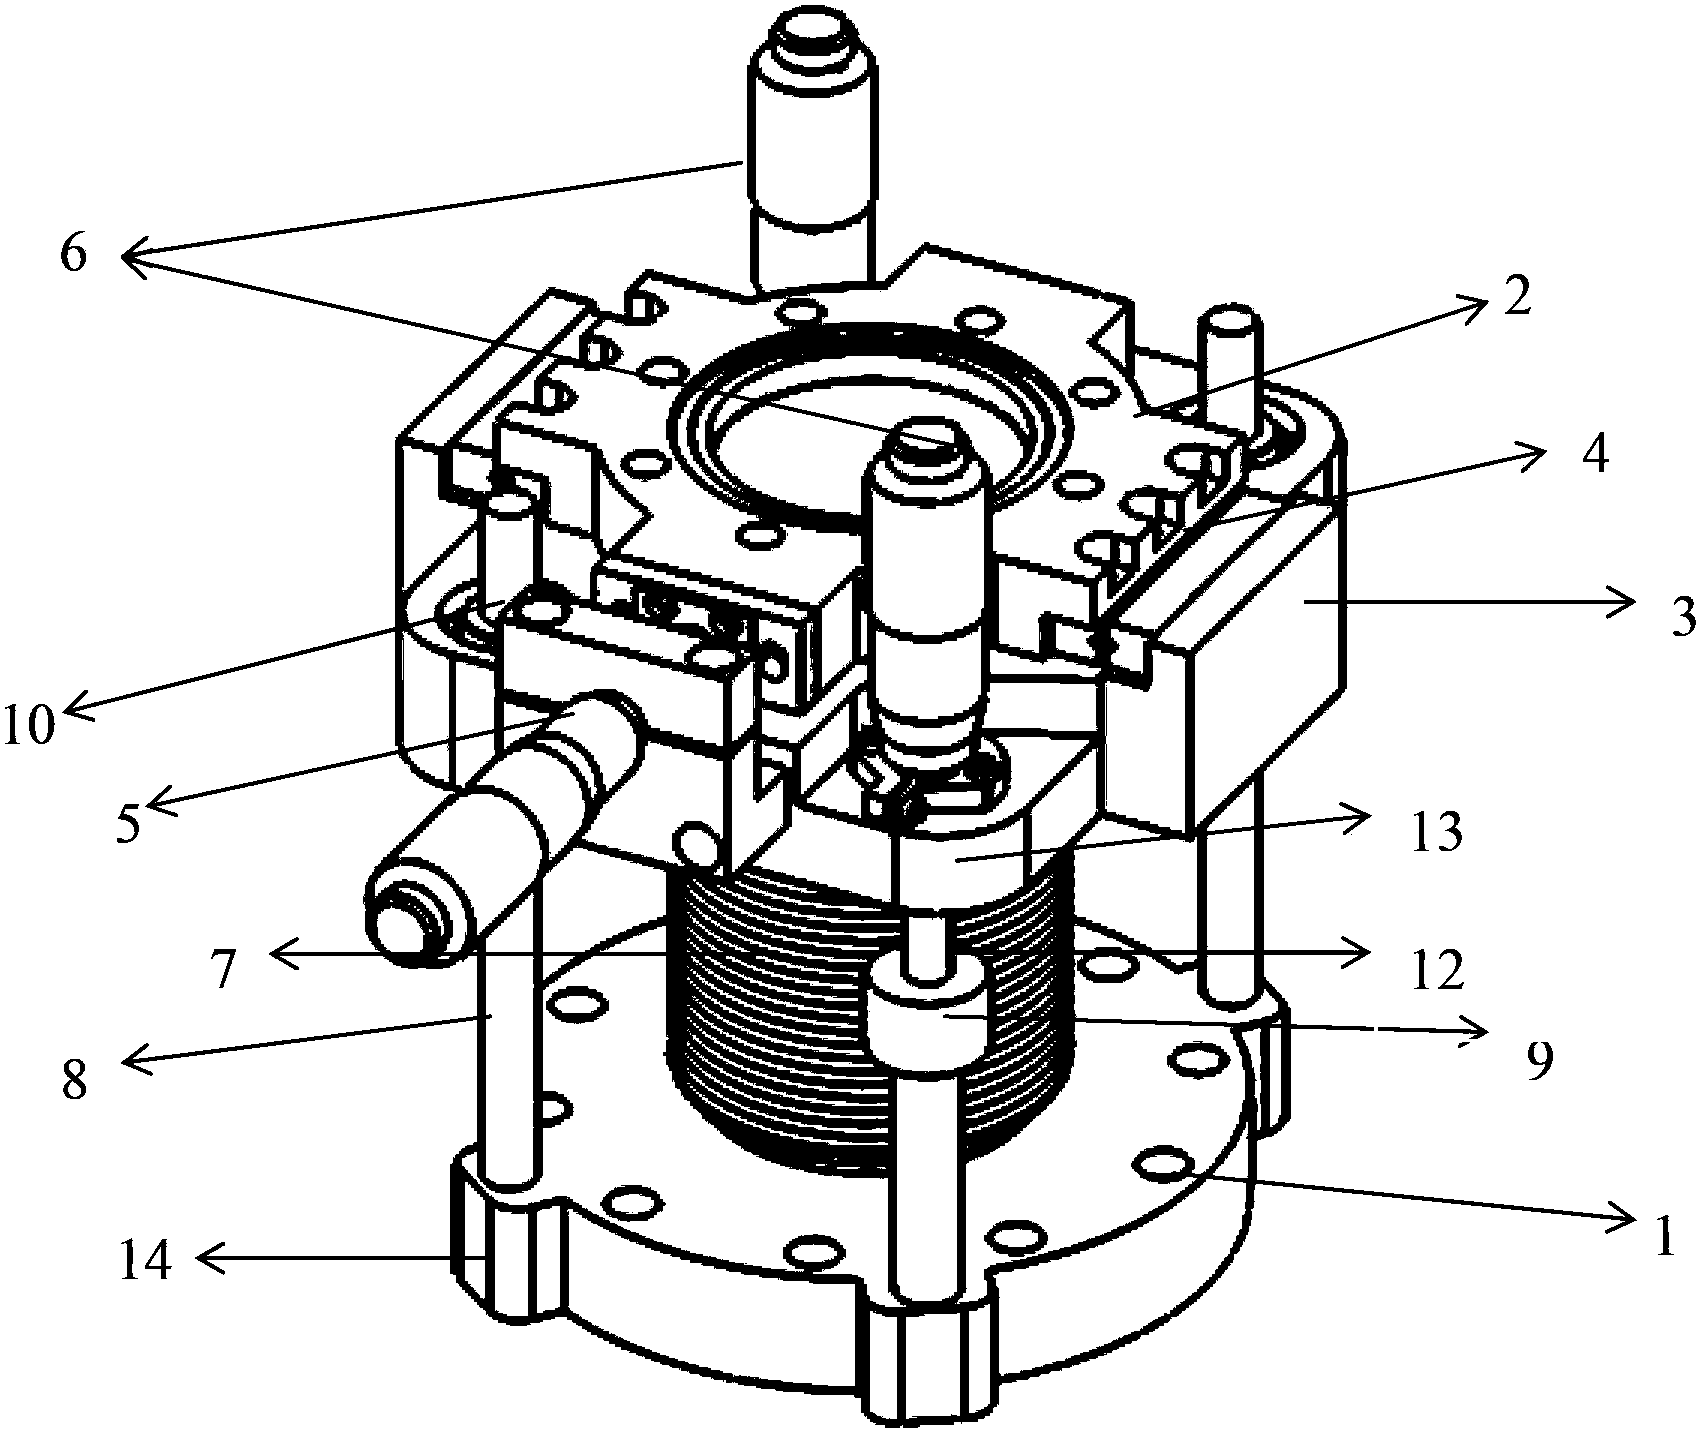 Vacuum precise displacement device